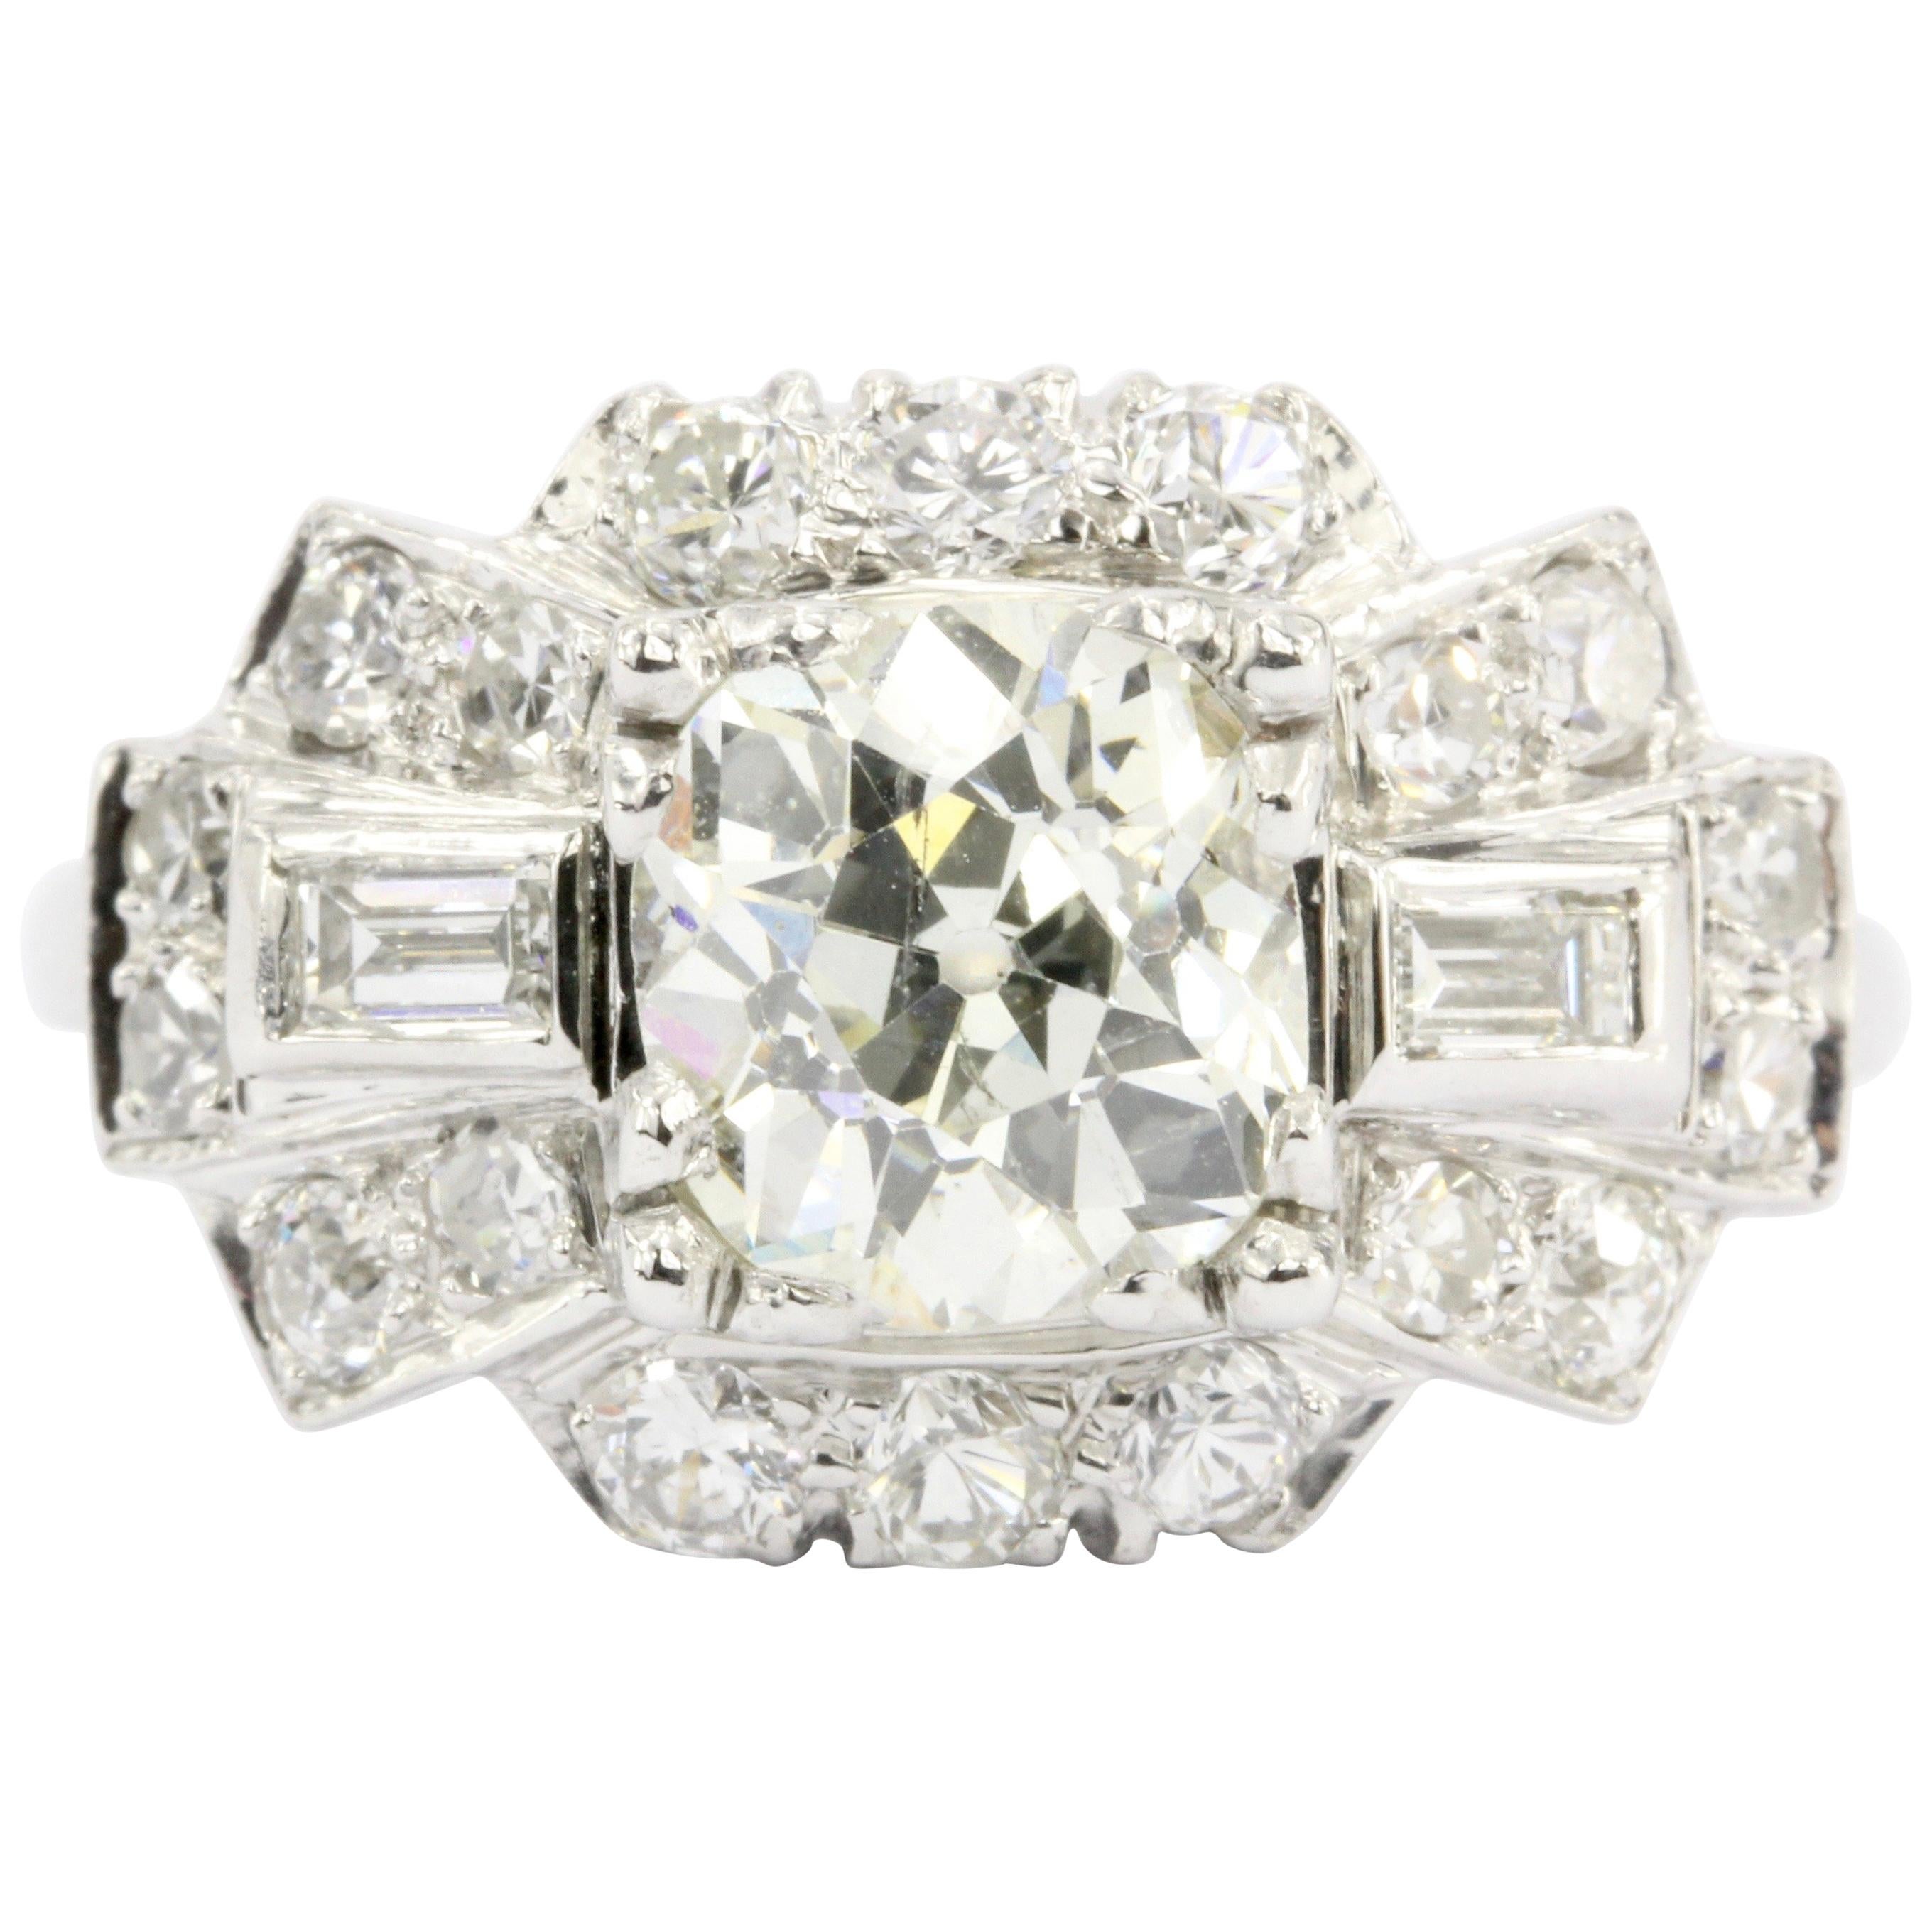 Art Deco Platinum Old European Cut Diamond Cluster Engagement Ring, circa 1920s